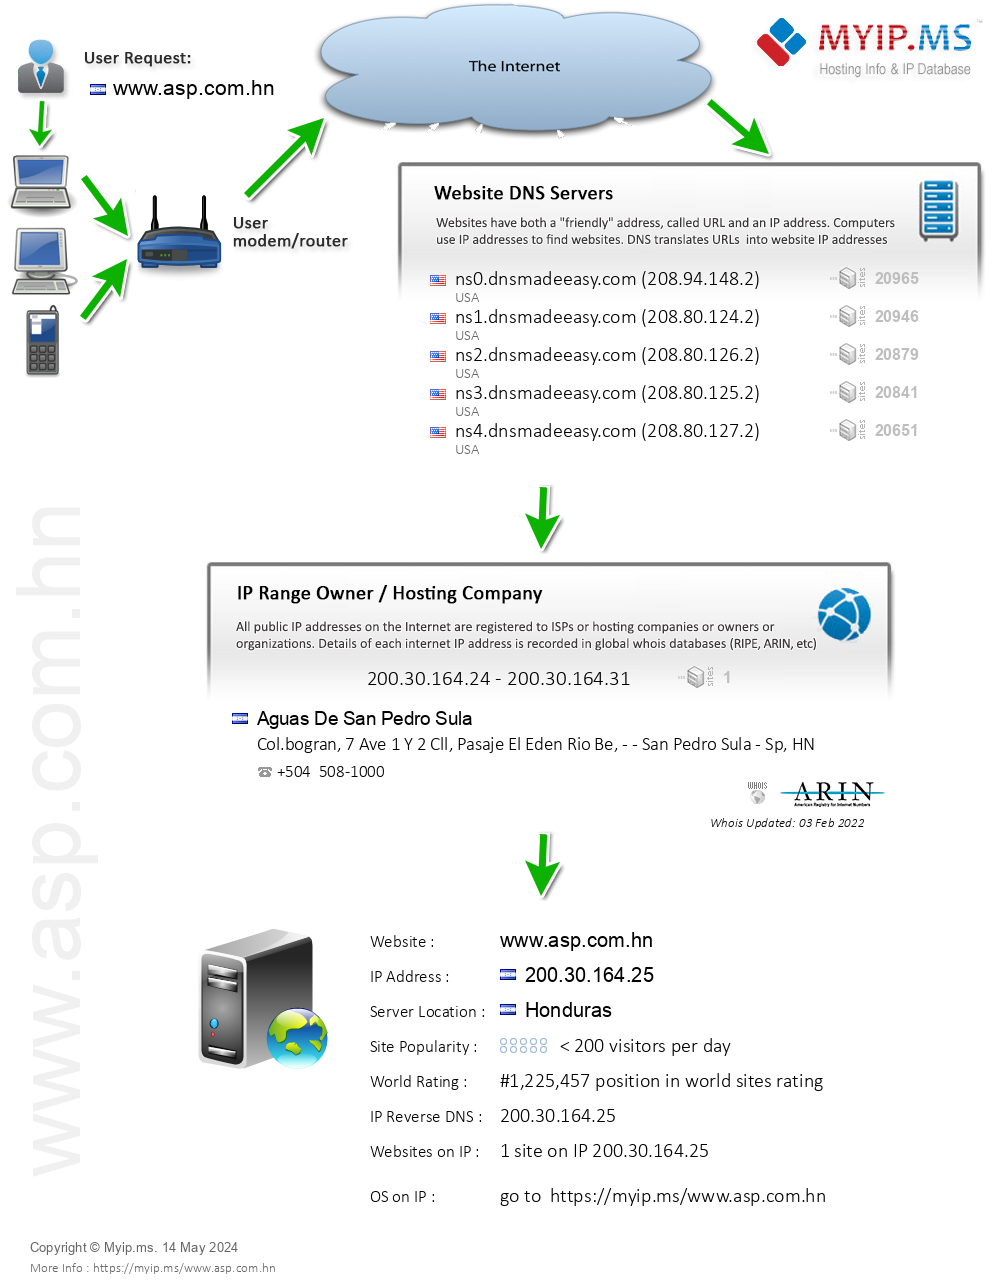 Asp.com.hn - Website Hosting Visual IP Diagram